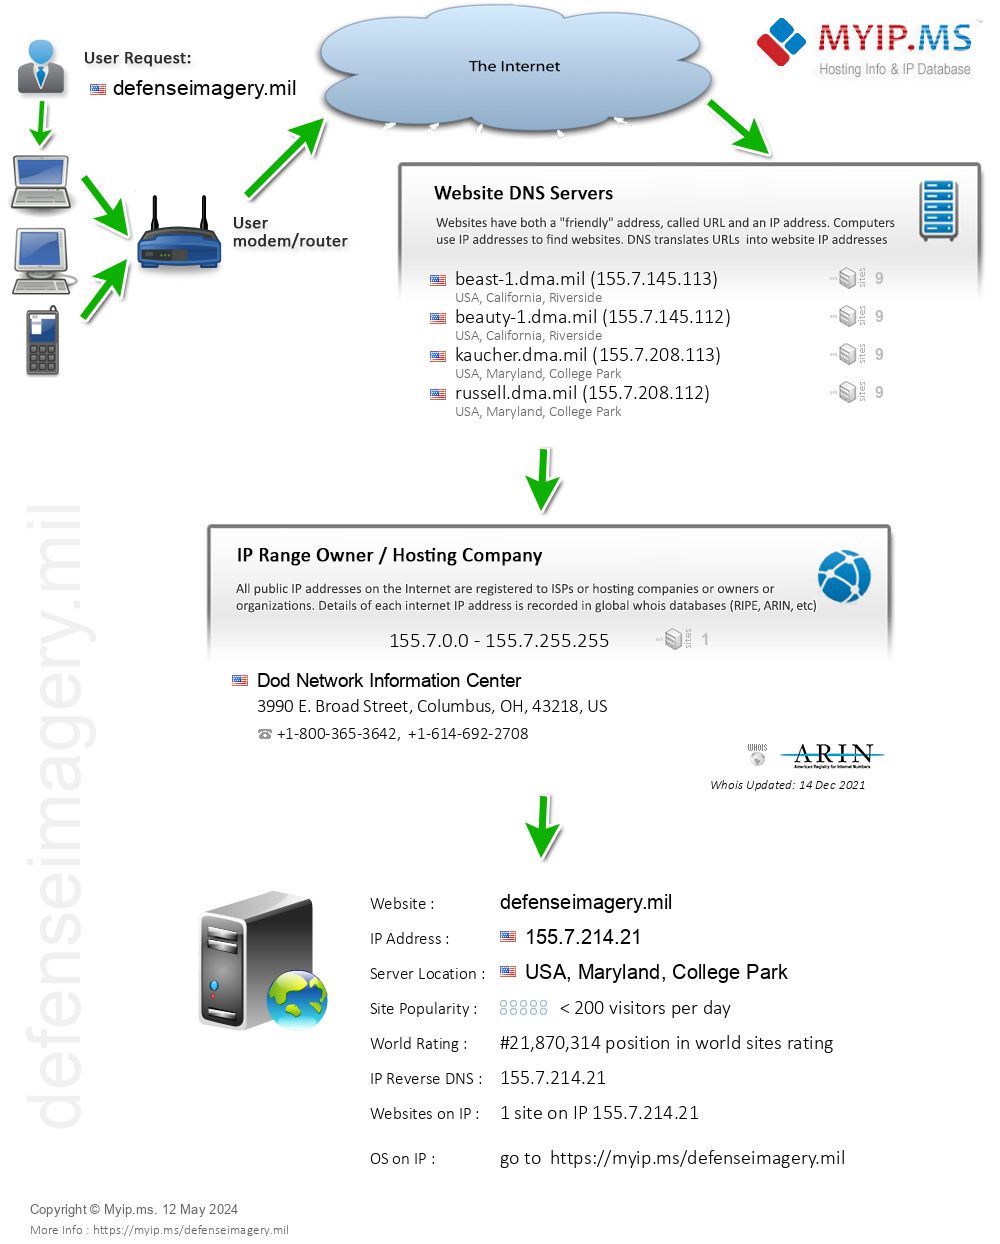 Defenseimagery.mil - Website Hosting Visual IP Diagram